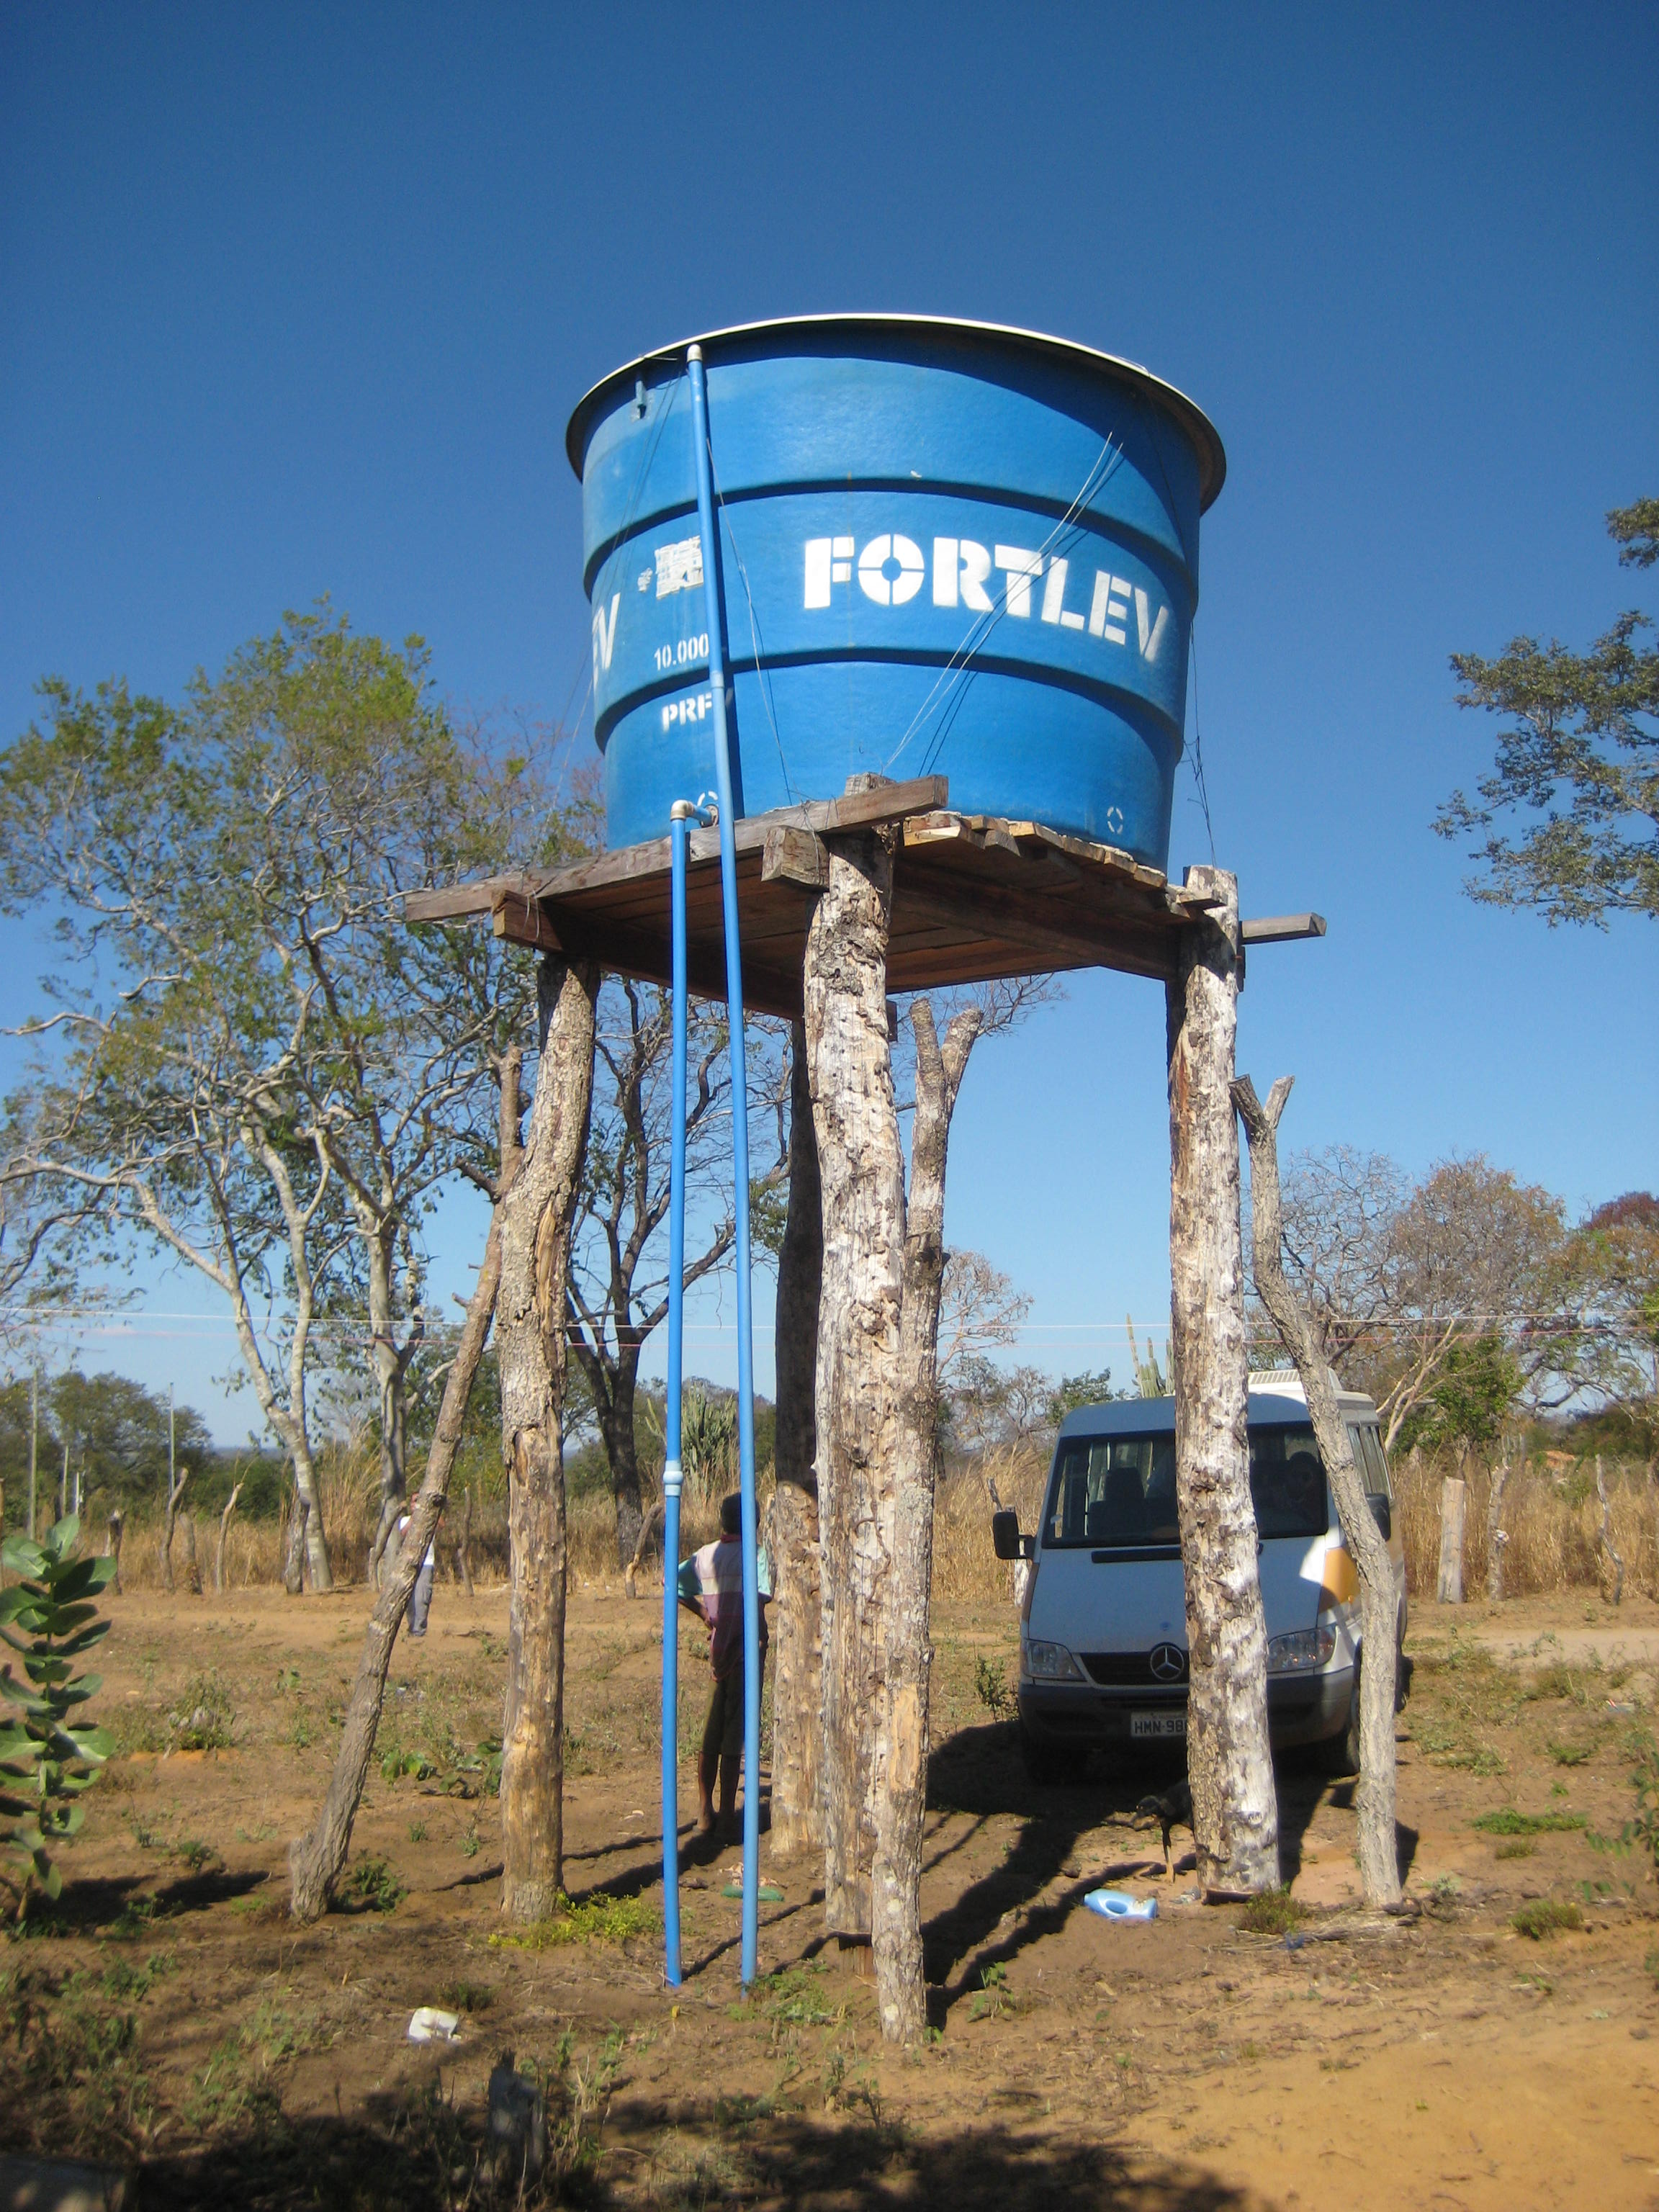 Caixa d’água para distribuição coletiva, comunidade de Lagedo, São Francisco, MG